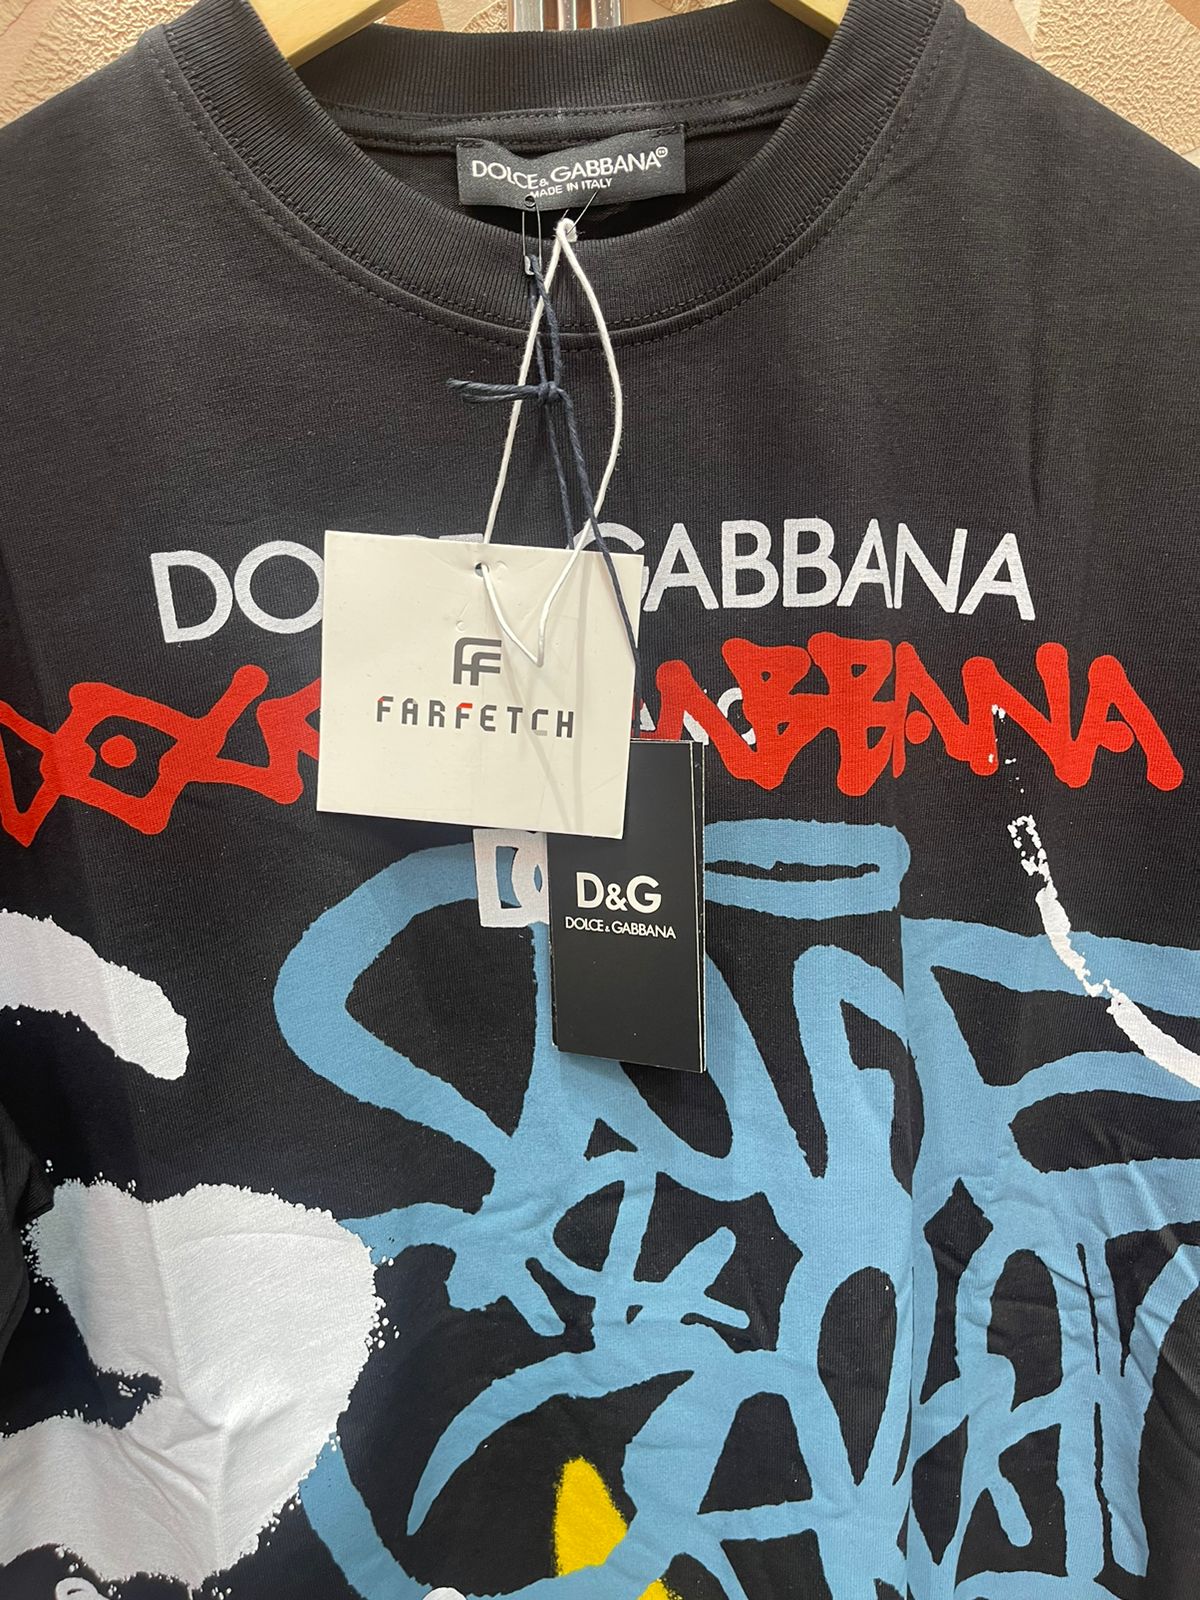 Dolce & Gabanna T-shirt